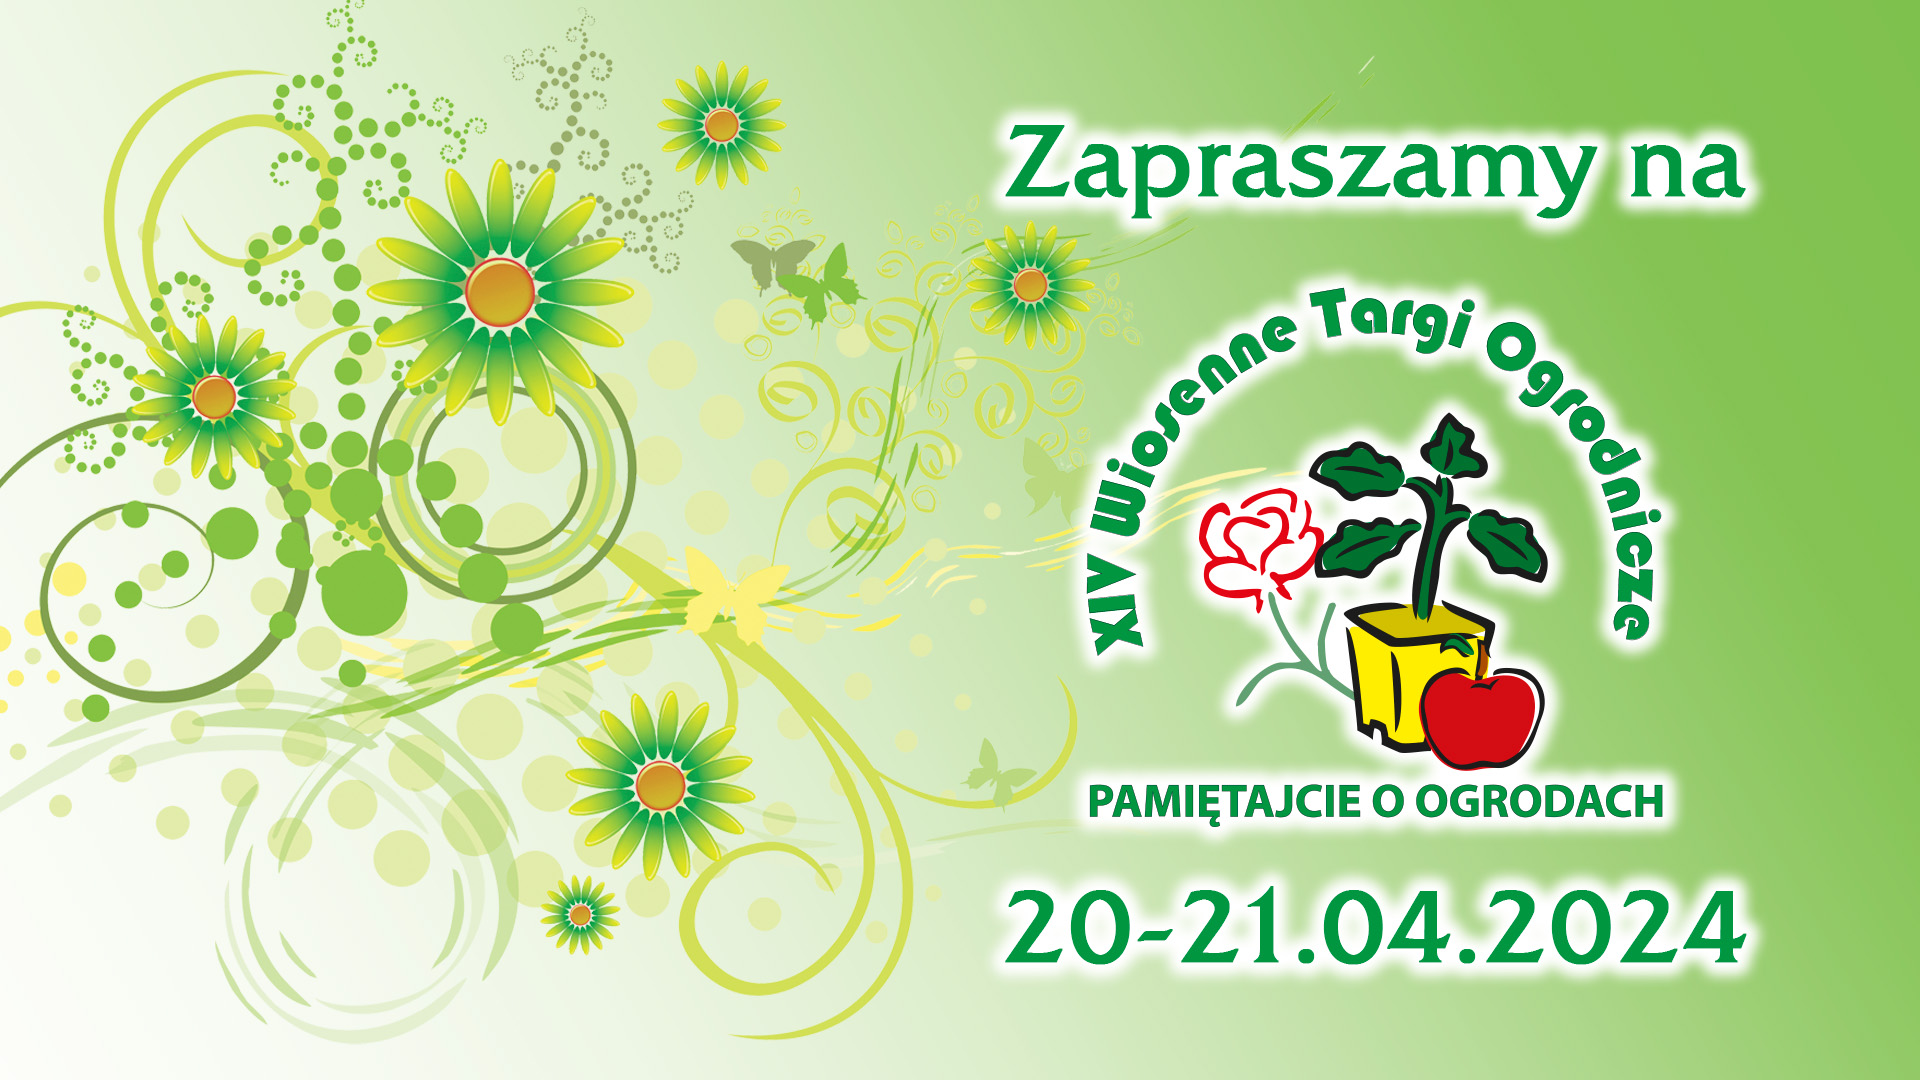 XIV Wiosenne Targi Ogrodnicze w Olsztynie  20-21 kwietnia 2024.